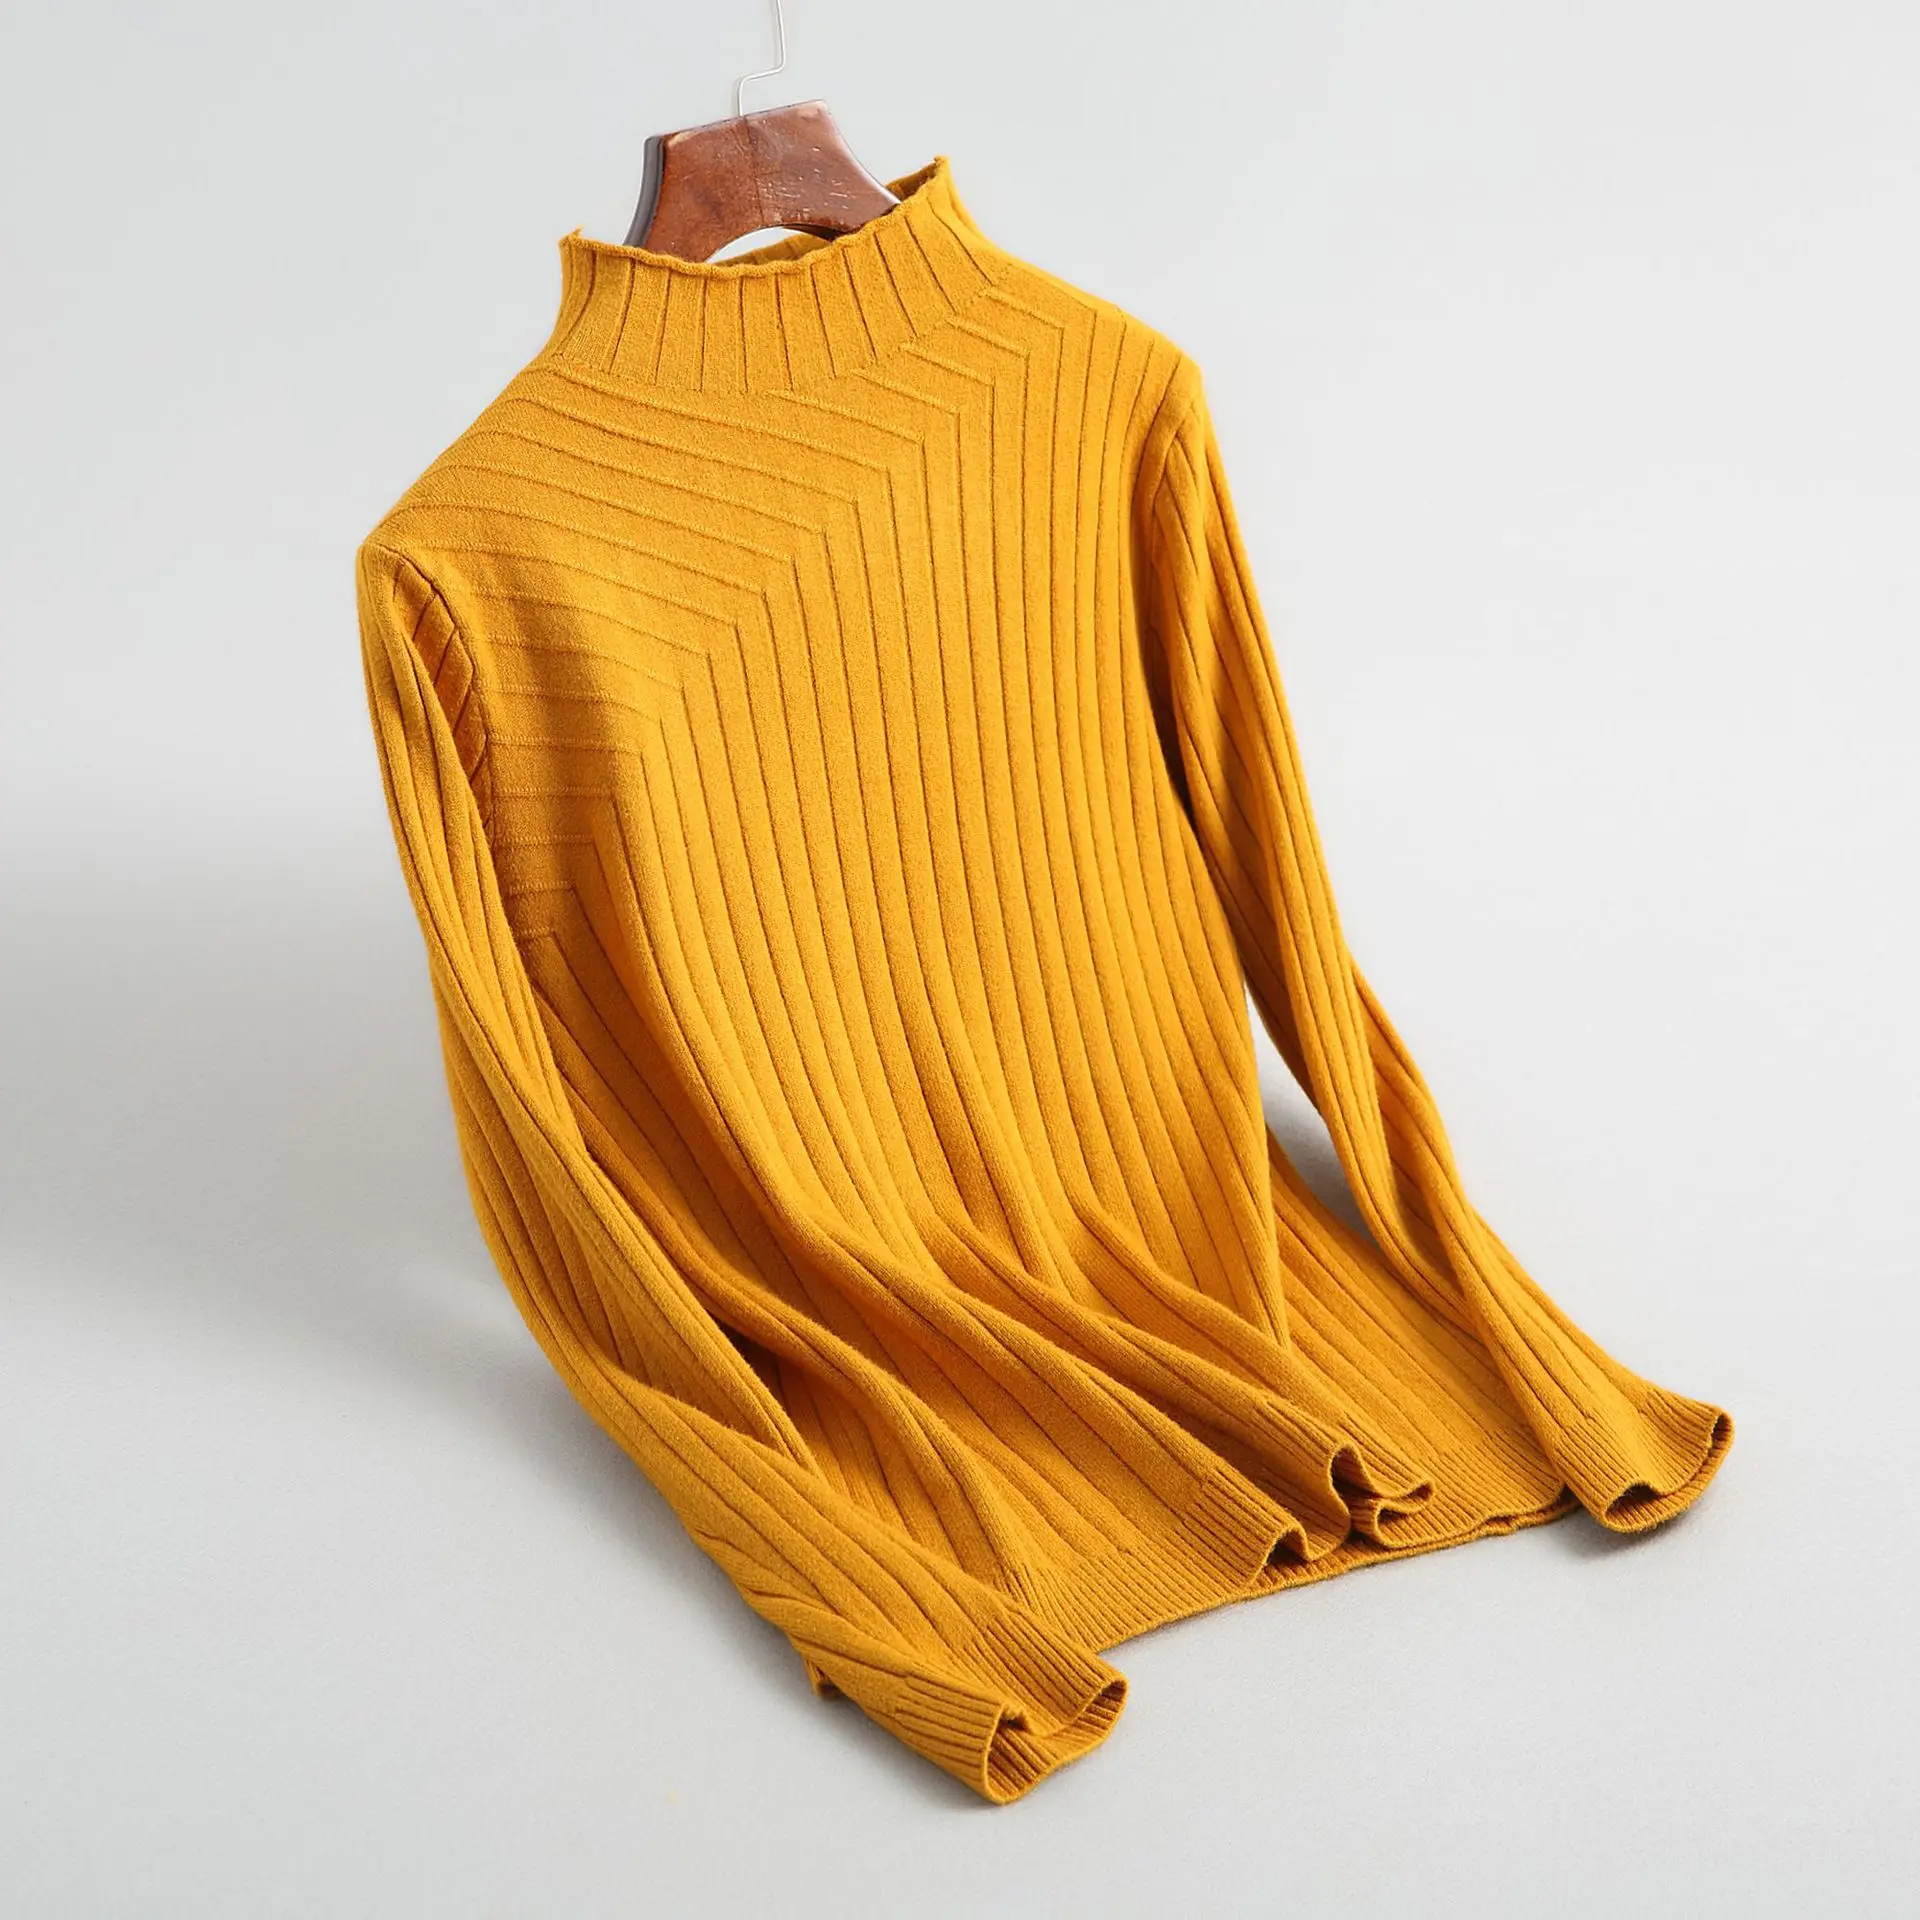 INNASOFAN свитер для женщин осень-зима вязаный свитер Евро-американская мода свитер с воротником средней длины и длинными рукавами - Цвет: Цвет: желтый